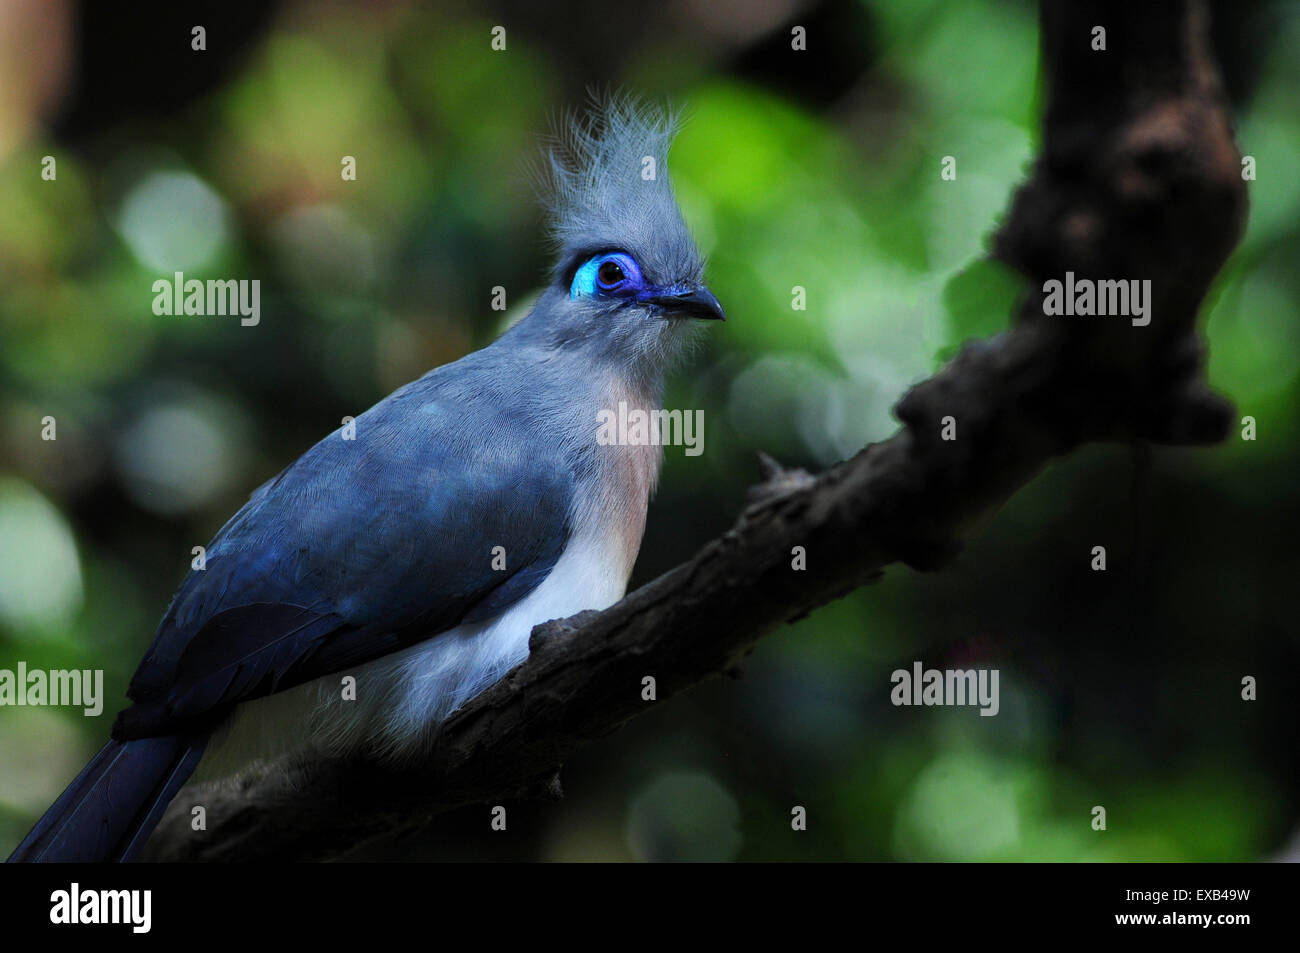 Gros plan de l'oiseau bleu exotique dans l'été Banque D'Images